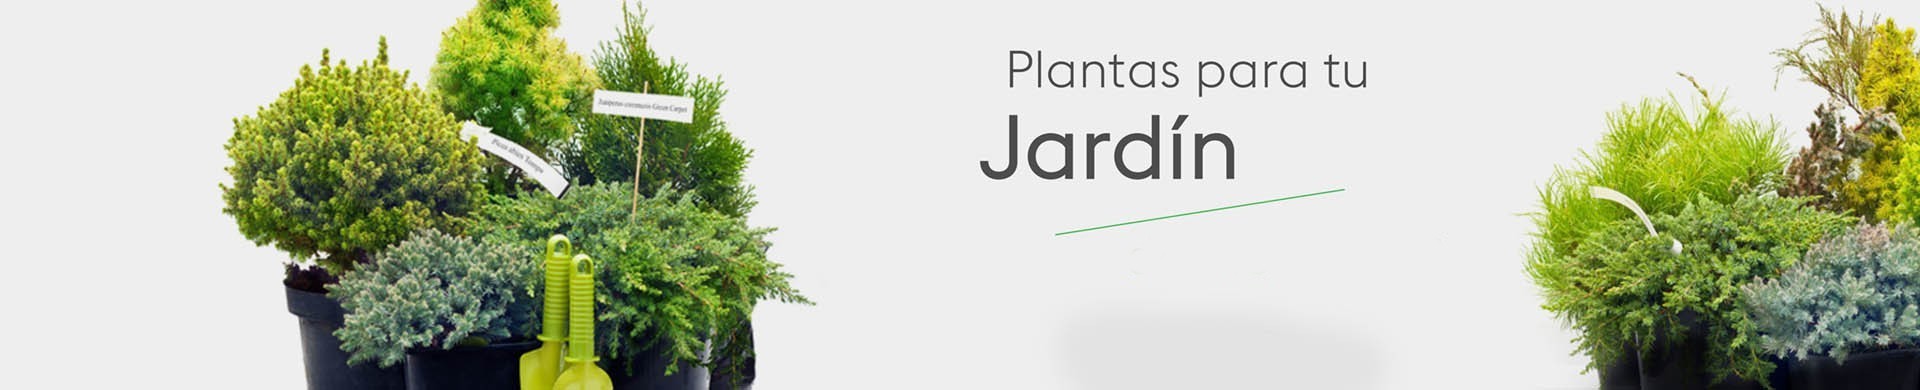 Plantas para jardín - Comprar árboles y arbustos para jardín online